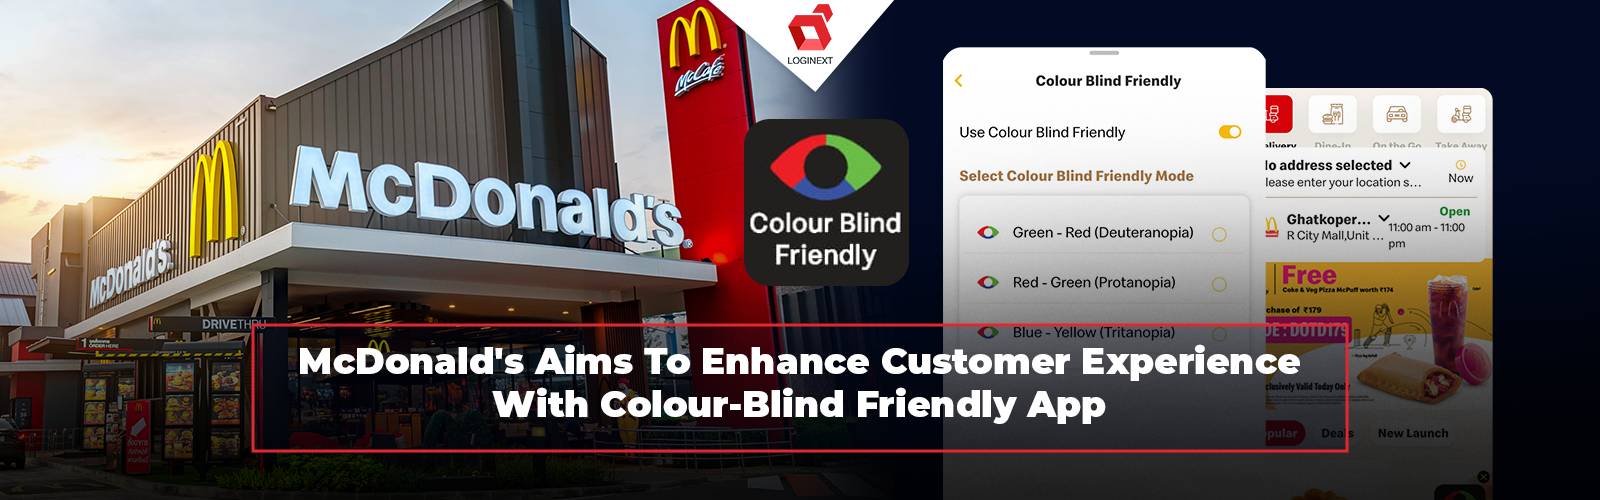 McDonald's는 색맹 친화적인 앱을 통해 고객 경험을 개선합니다.